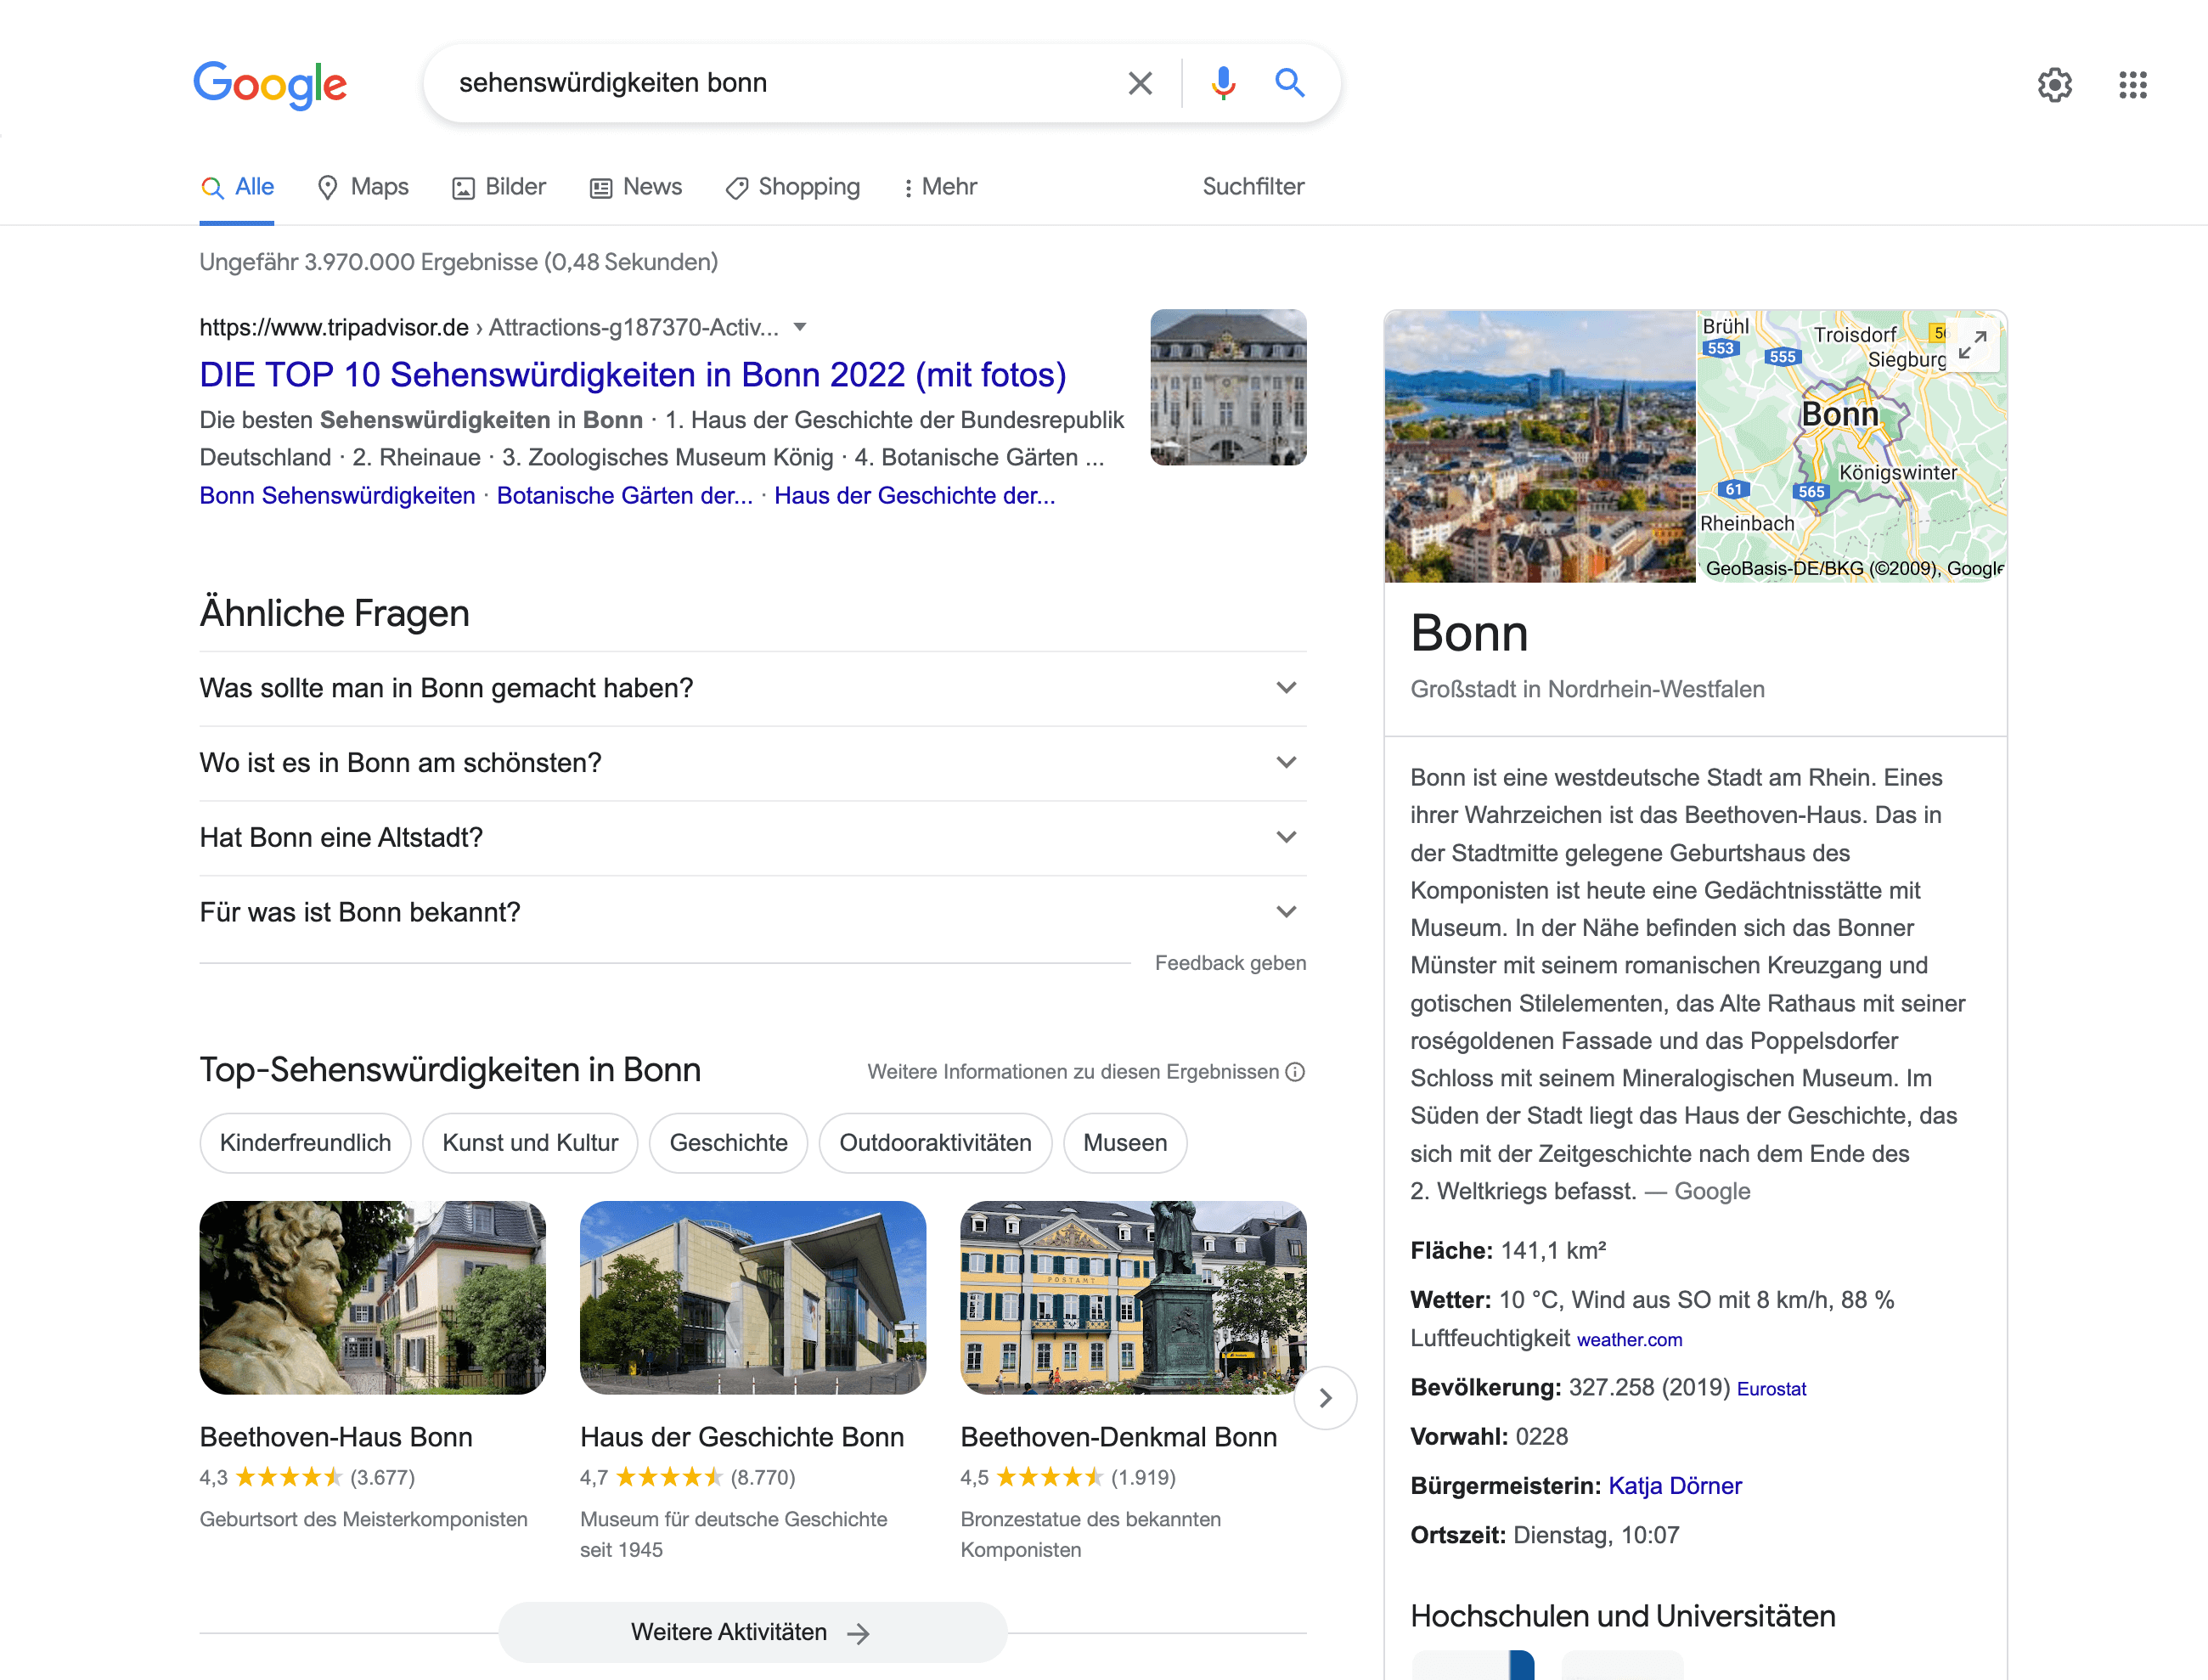 Bei der Google-Suche nach Sehenswürdigkeiten in Bonn erscheint ganz oben ein Link von tripadvisor zu den Top 10 Sehenswürdigkeiten, außerdem eine Info-Box zur Stadt Bonn und ähnliche Fragen zu der Suchanfrage. Darunter sind von Google einige Sehenswürdigkeiten vorgeschlagen.